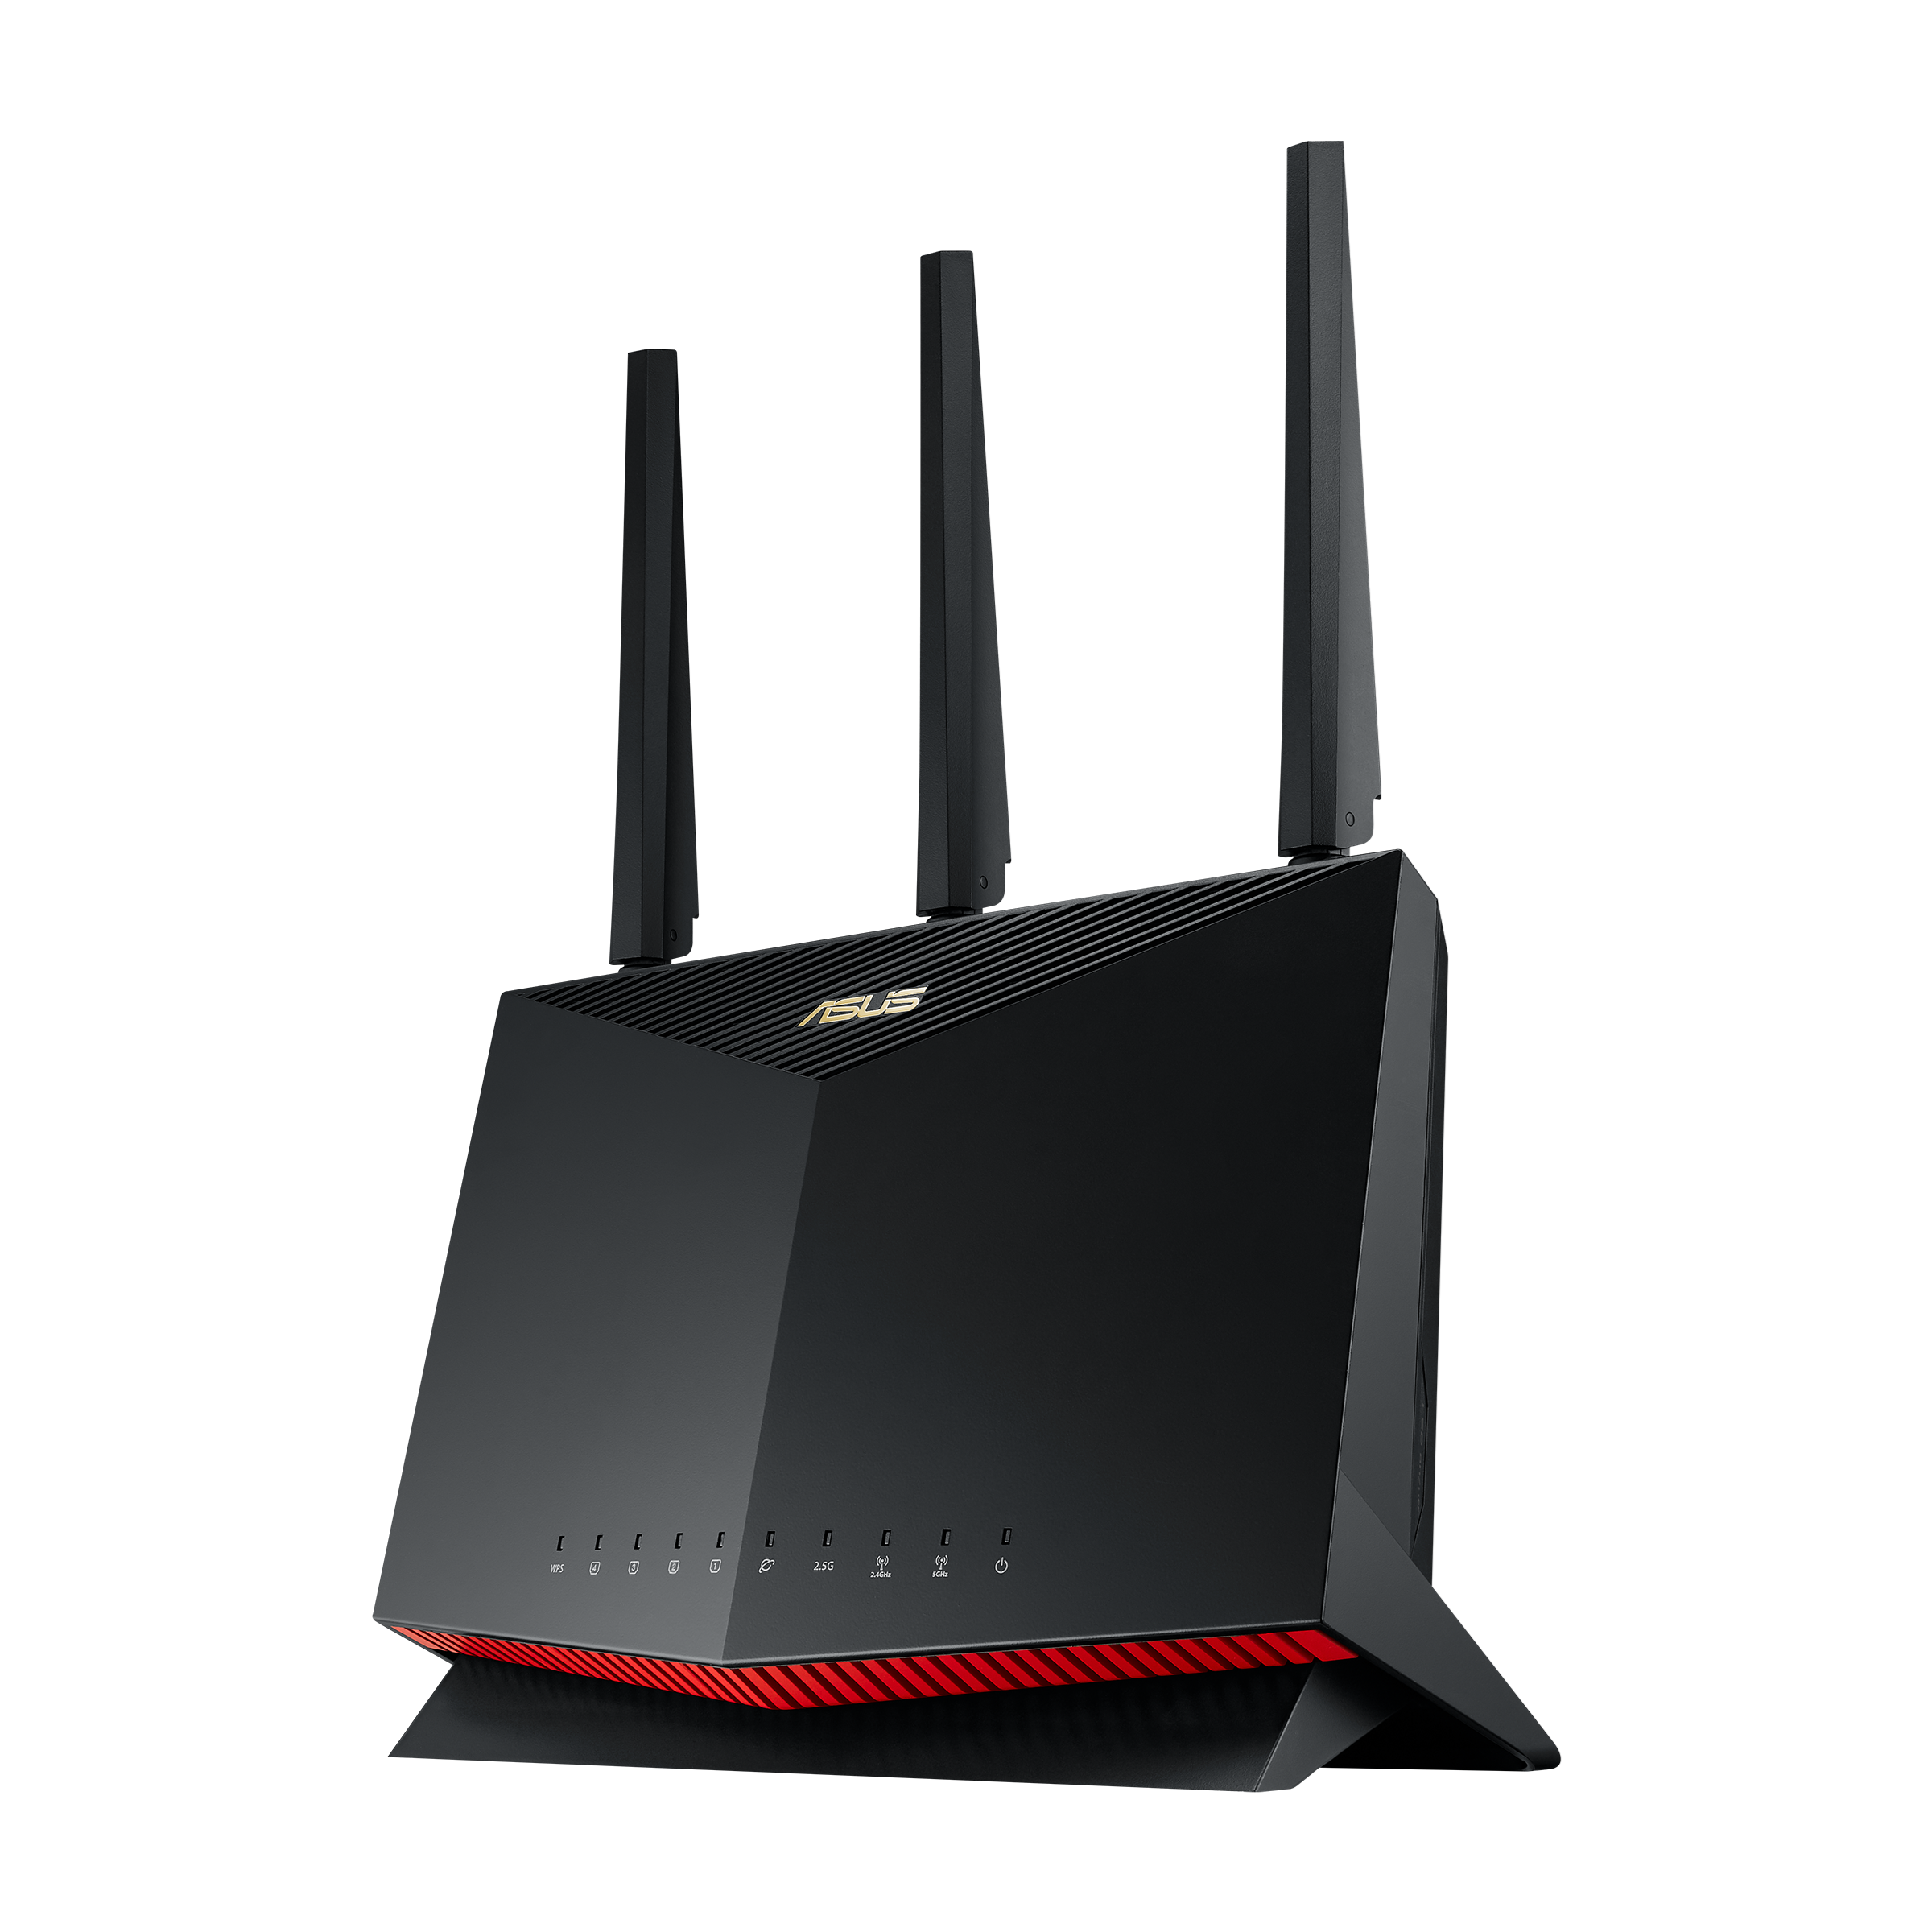 ASUS 無線LAN(Wi-Fi)ルーター【TUF-AX3000】